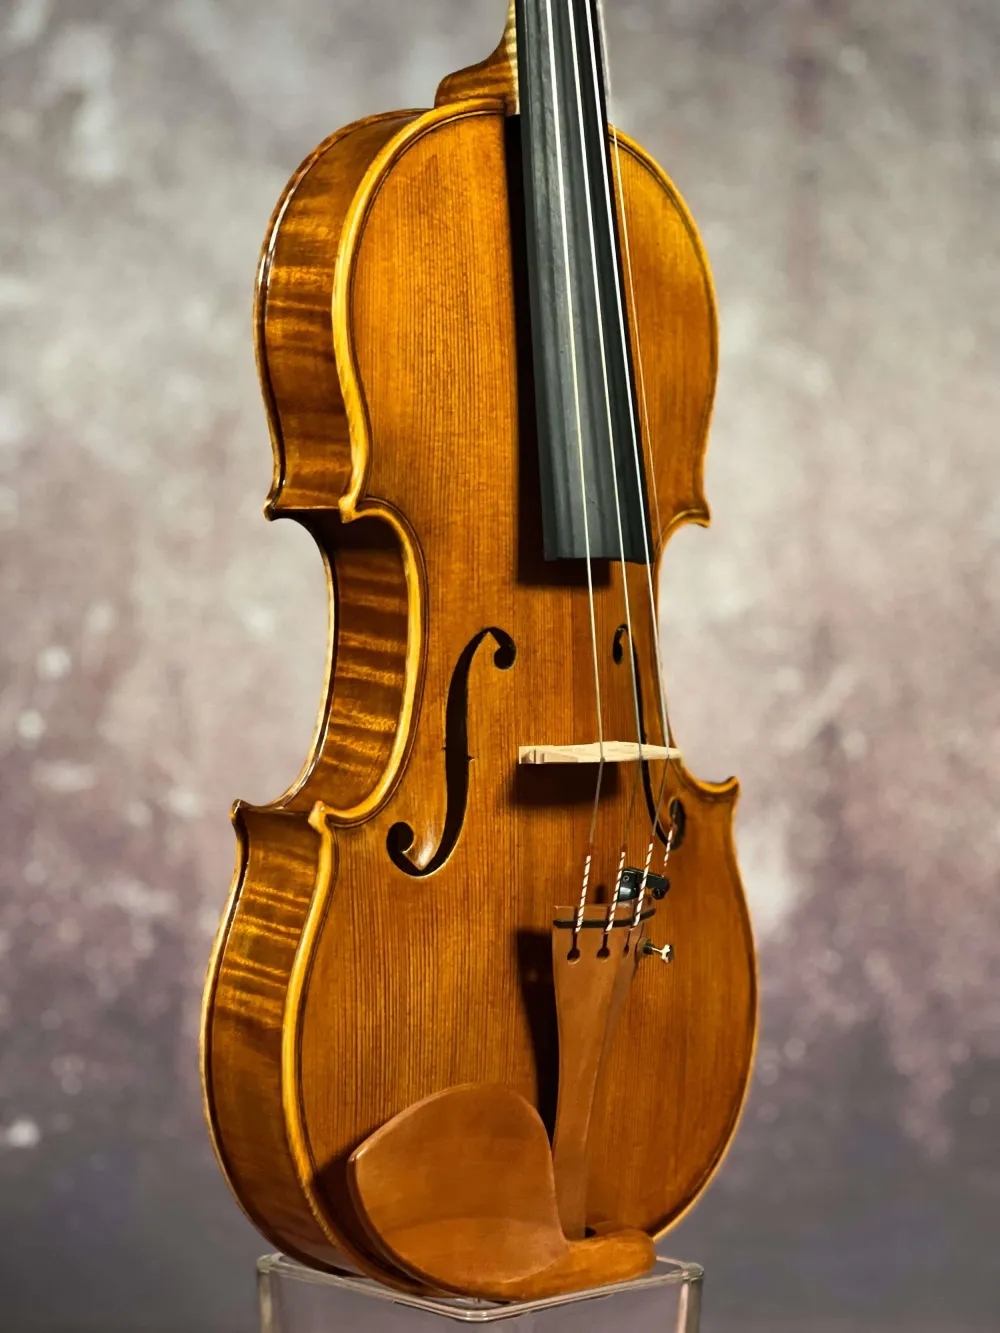 Decken-Zarge-Detailansicht einer Simon Joseph Meister Geige (Violine) Handarbeit 2018